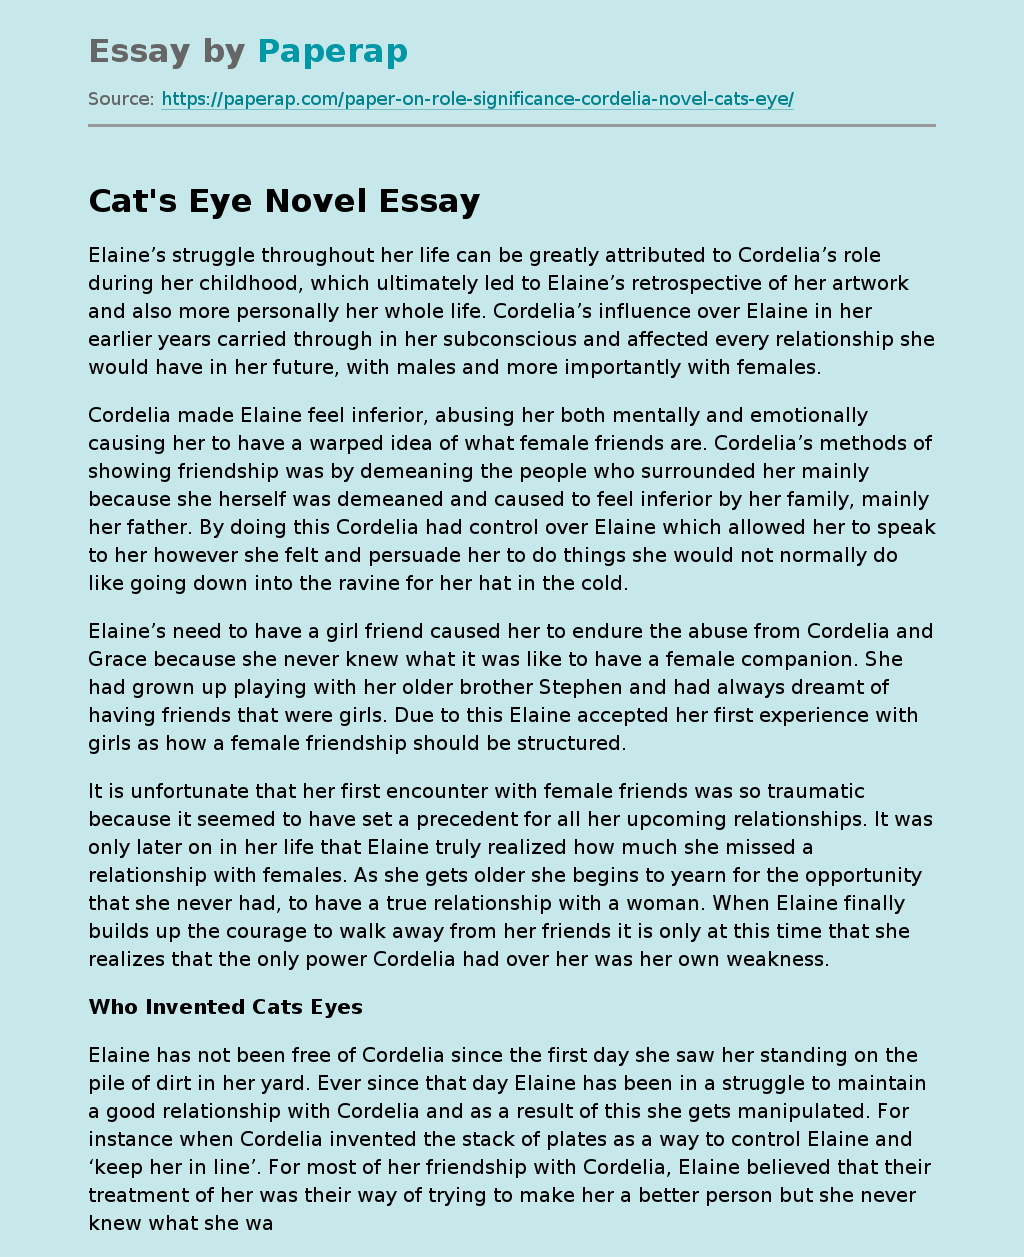 Cat's Eye Novel